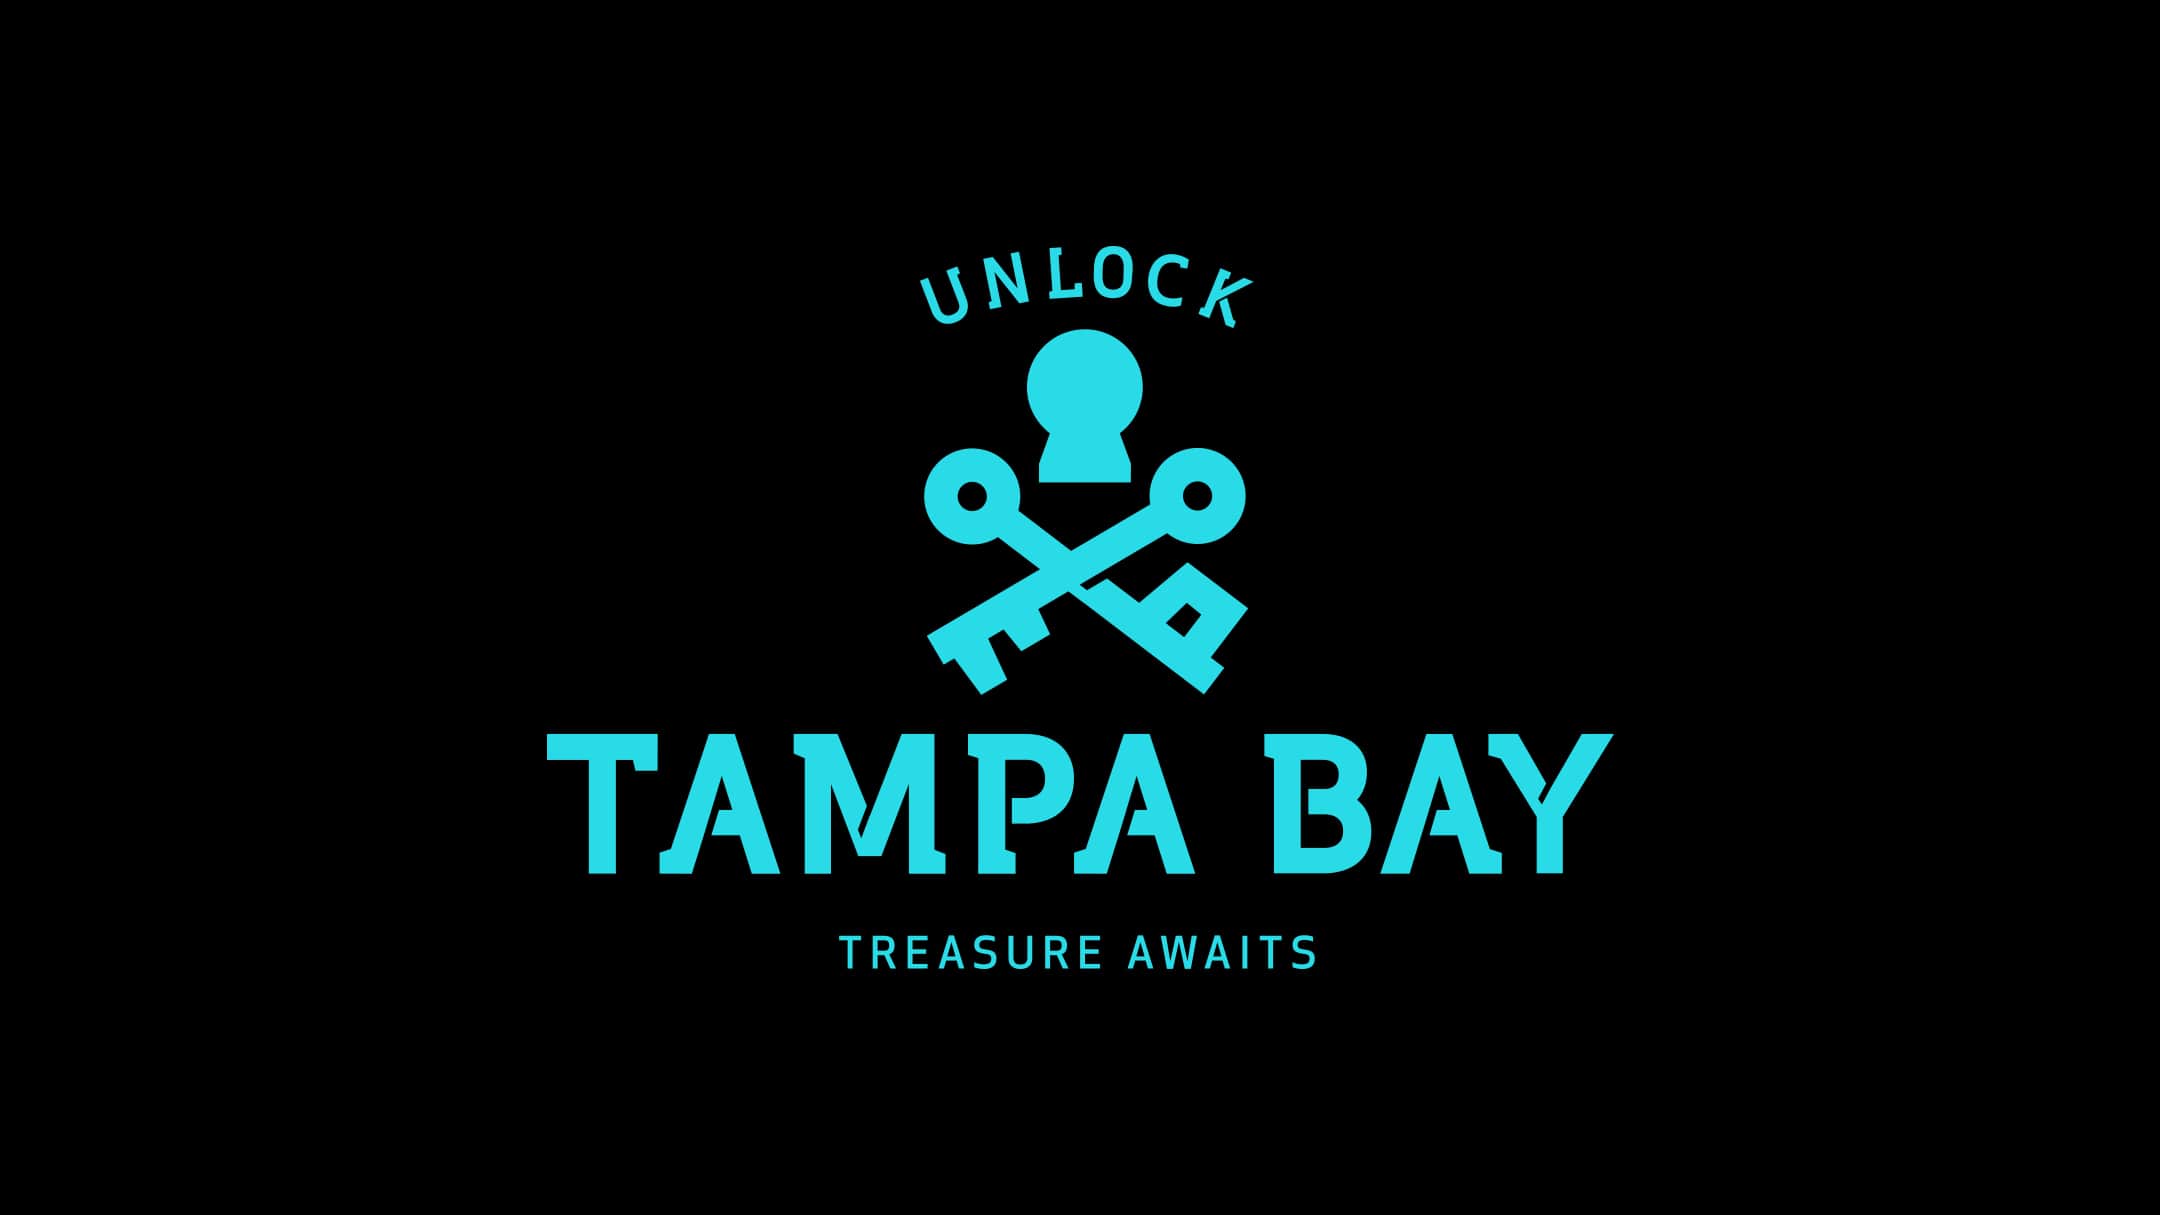 Tampa bay logo, blue on black